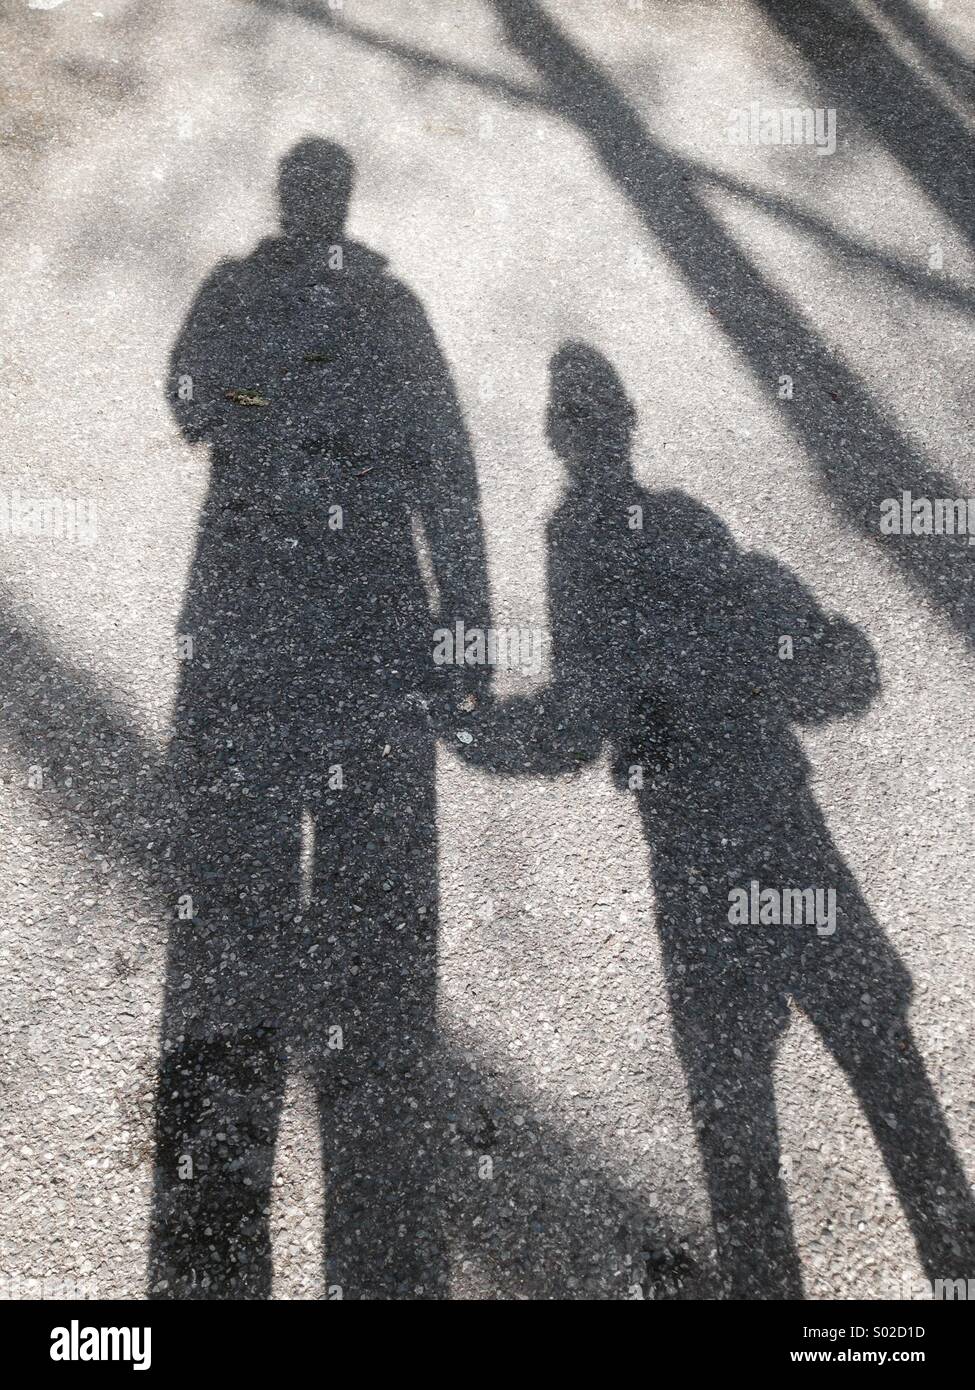 Sombra del niño y de los padres, los géneros no están claros podría ser padre, madre, hijo o hija. El niño está sosteniendo un balón bajo el brazo. La superficie es de asfalto. A comienzos de la primavera (marzo), Londres, Reino Unido. Foto de stock